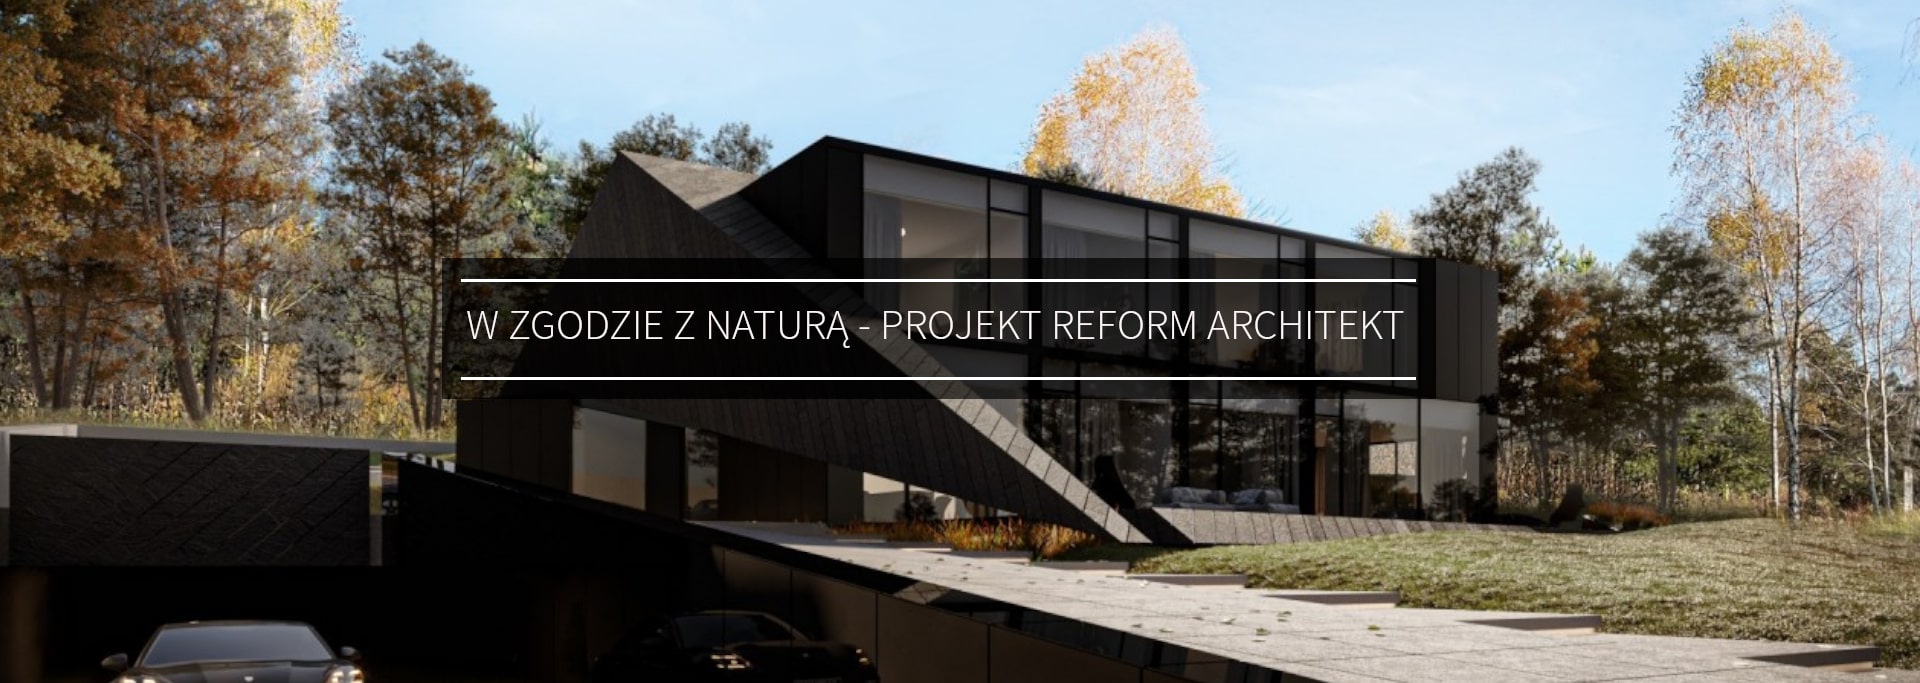 w zgodzie z naturą - projekt Reform architekt